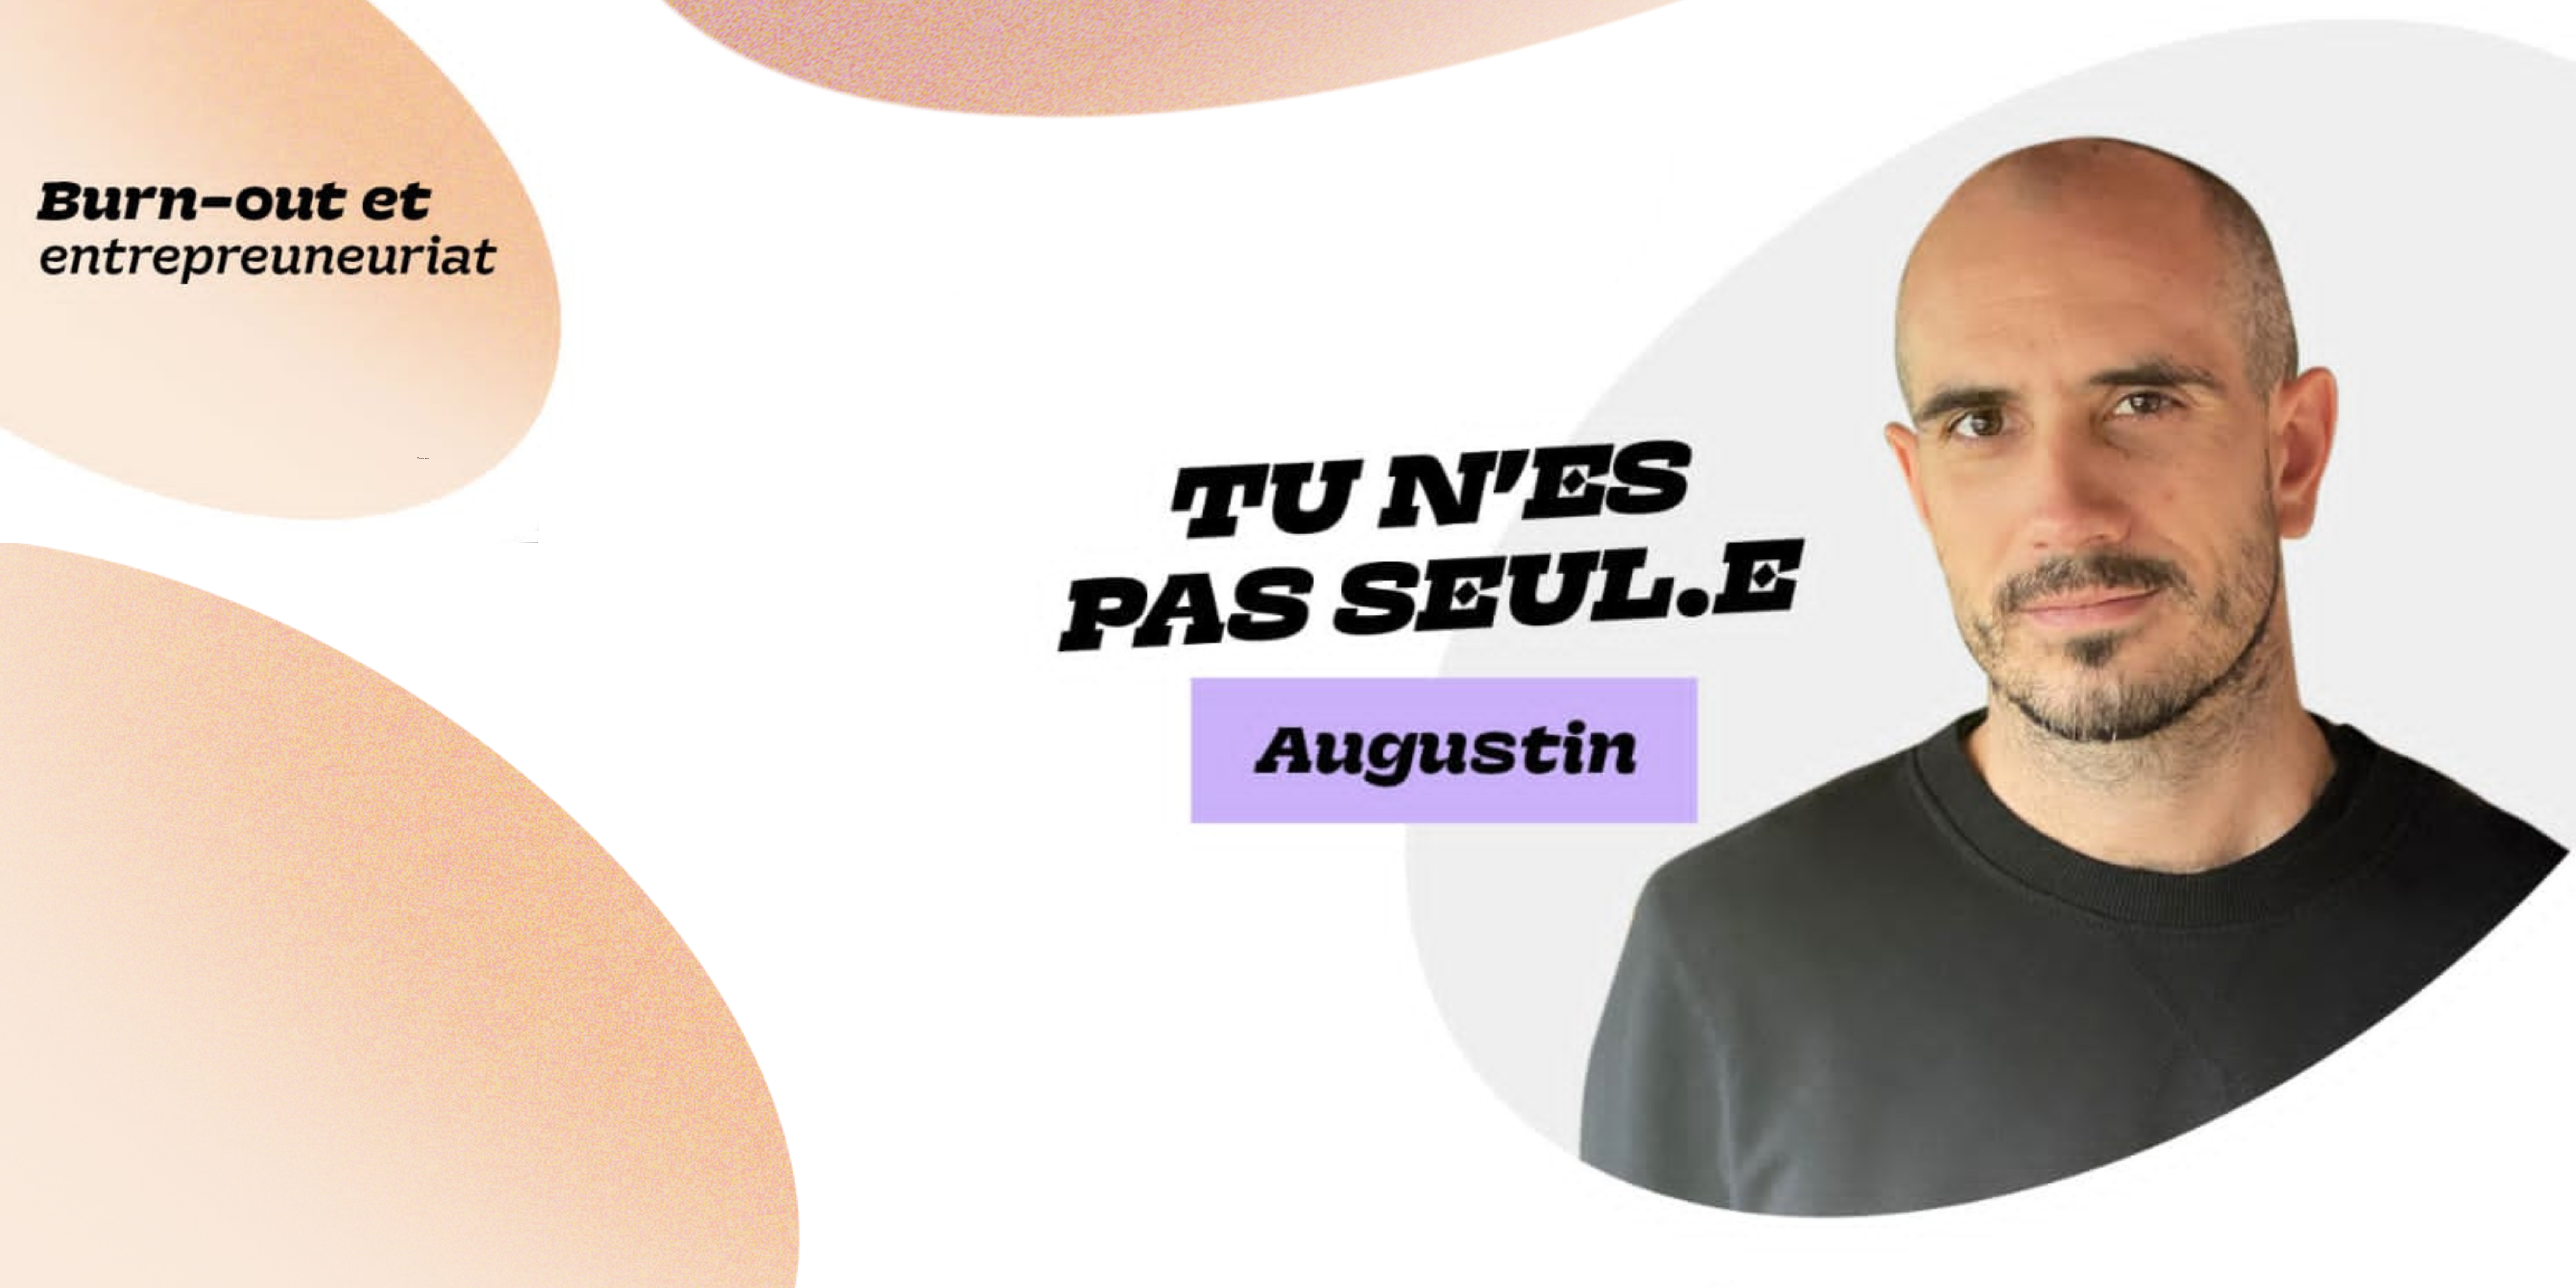 Burn-out et entrepreneuriat – « Tu n’es pas seul·e » d’Augustin